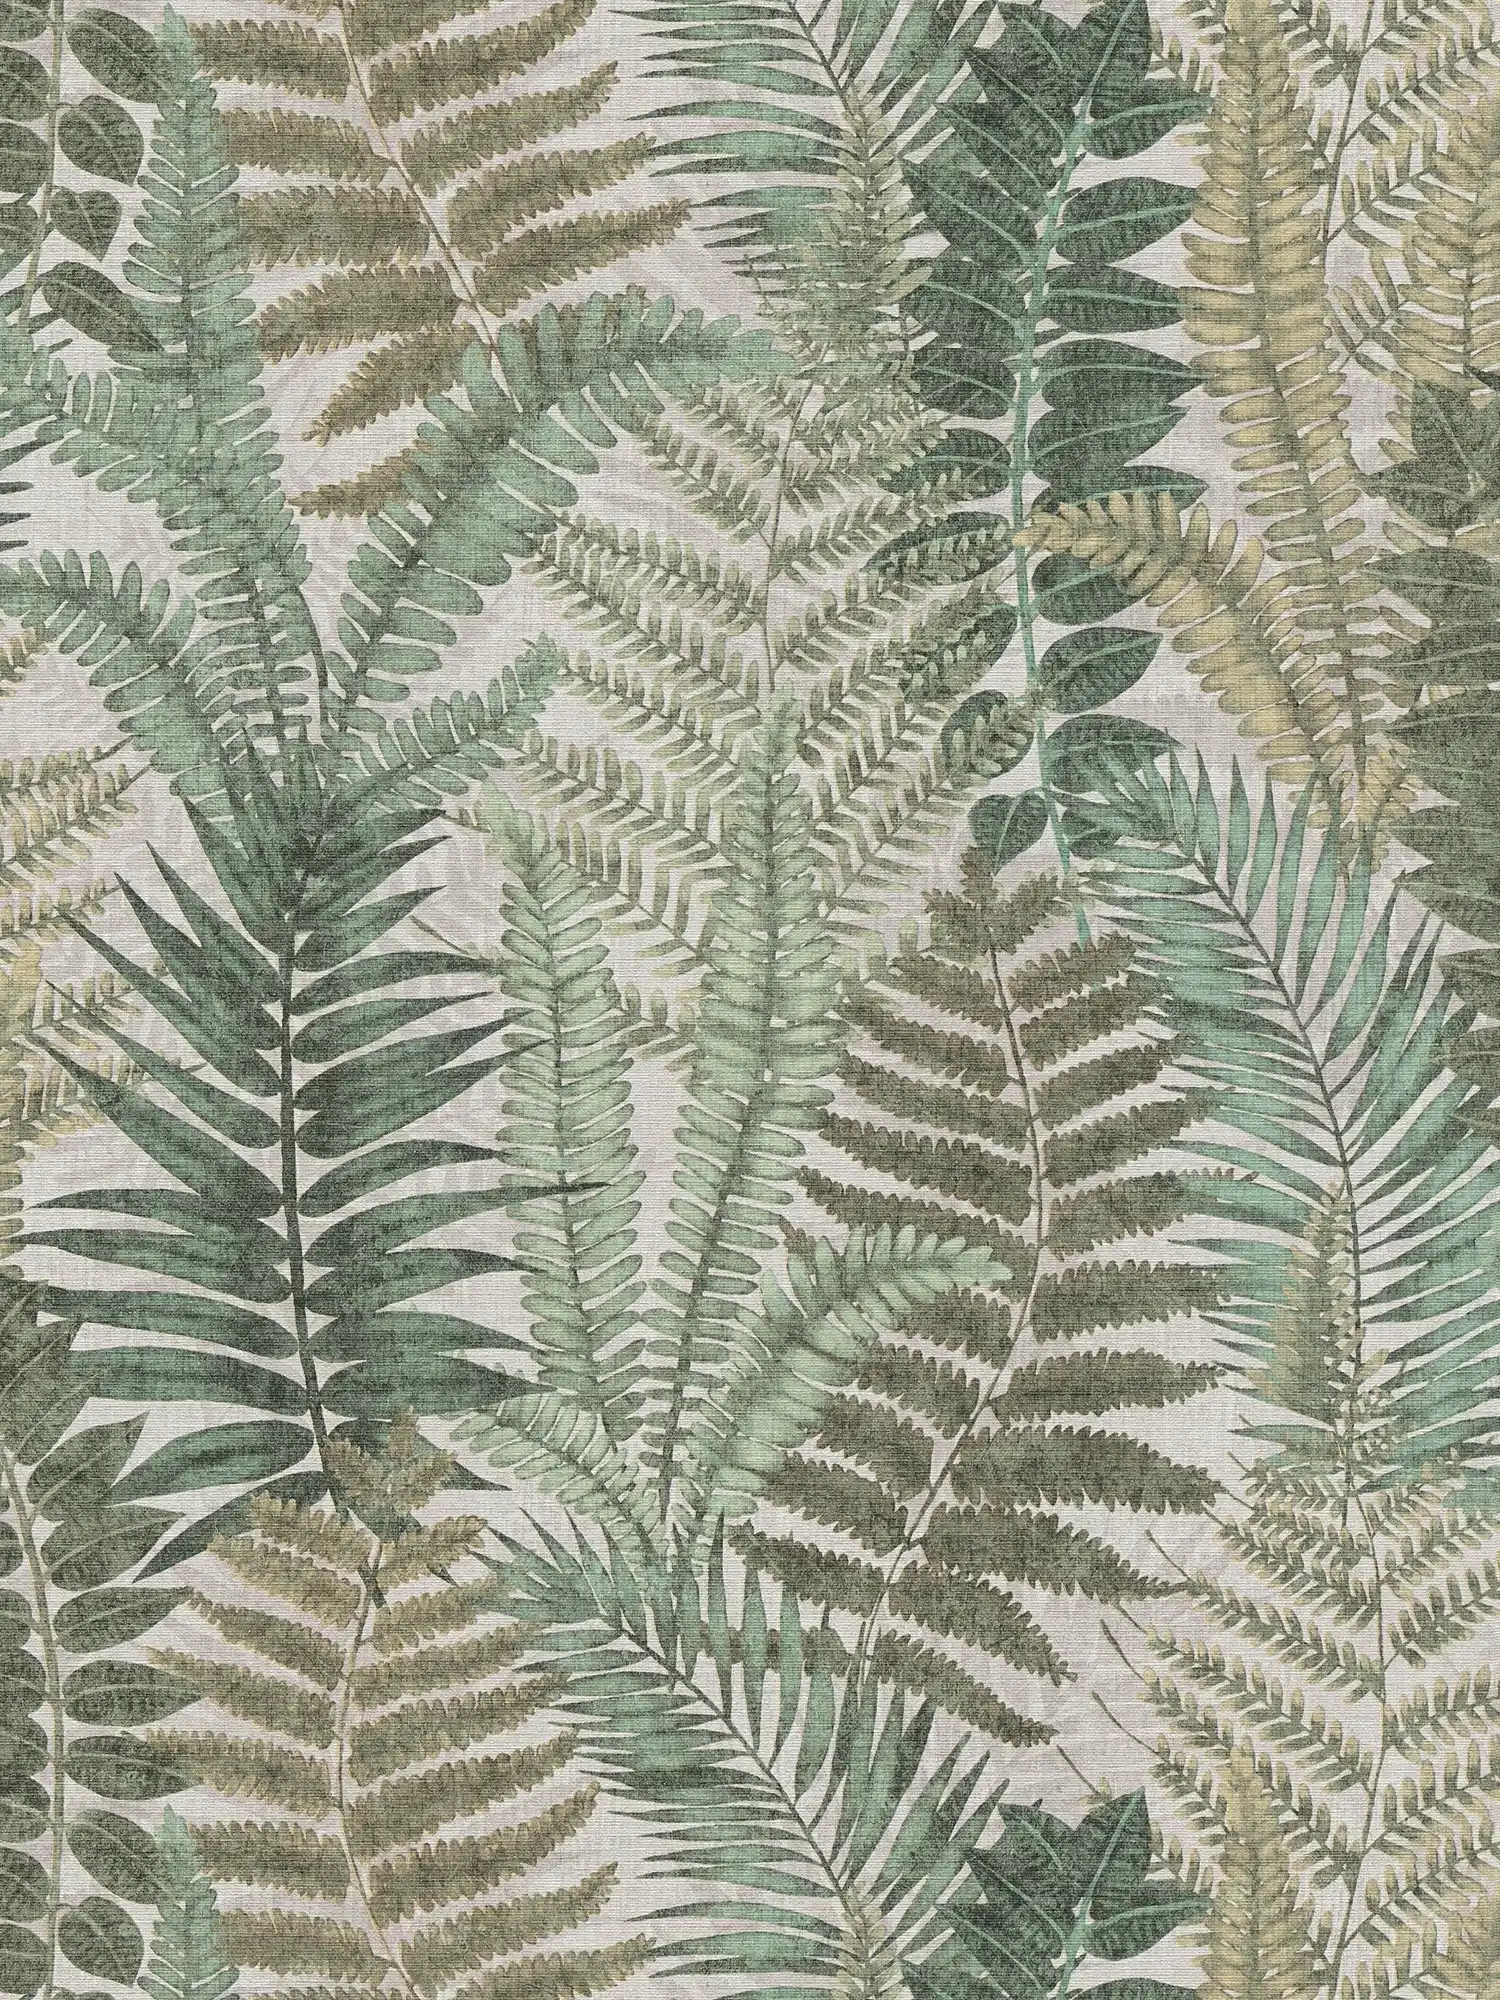 wallpaper floral with fern leaves light textured, matt - beige, green, brown
